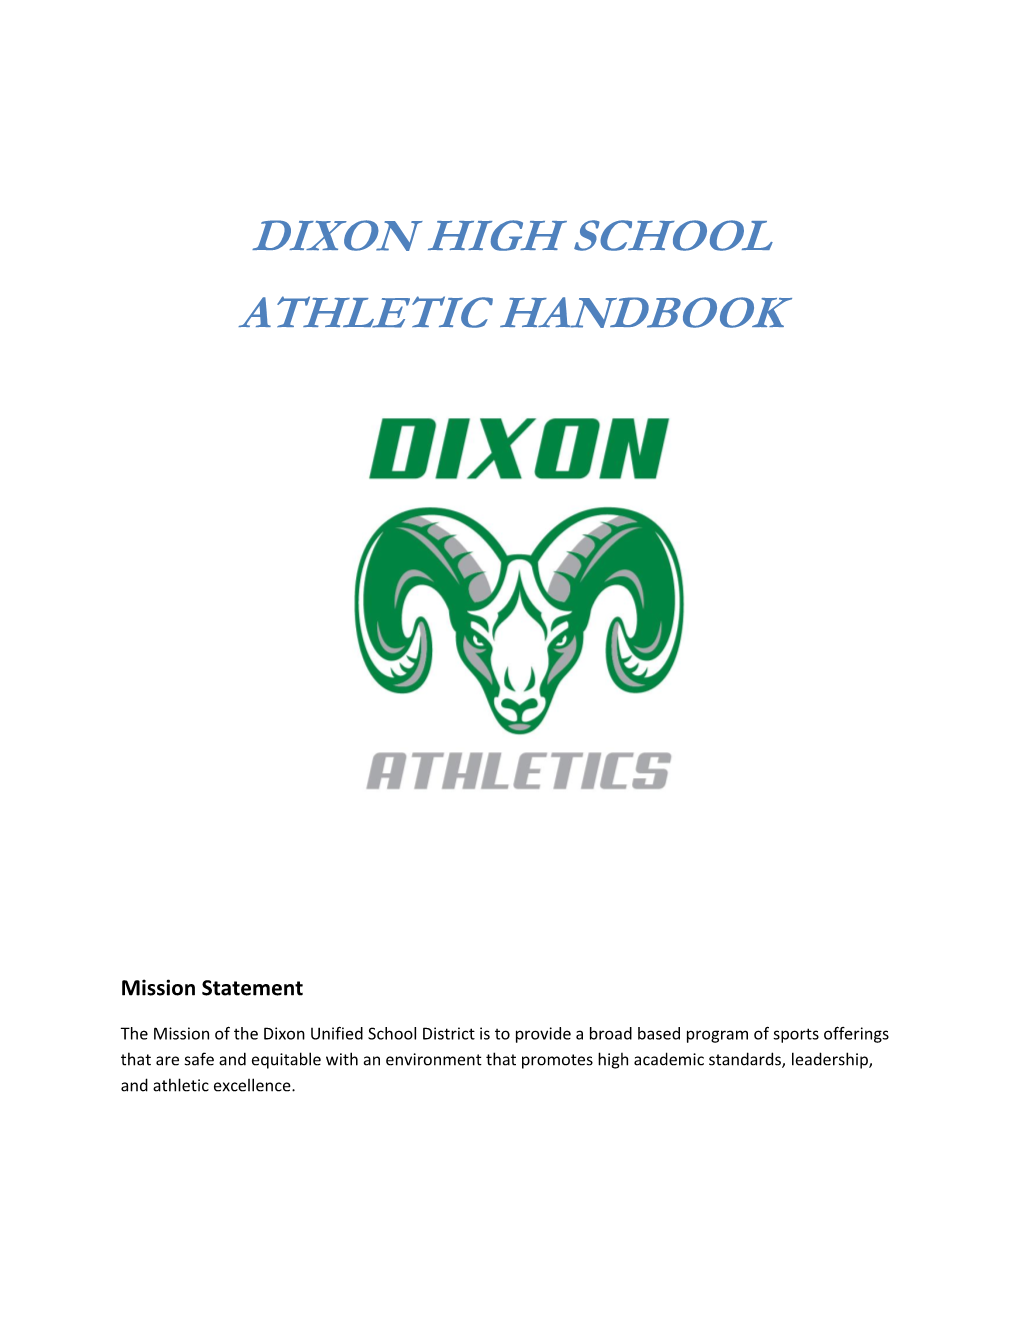 Dixon High School Athletic Handbook